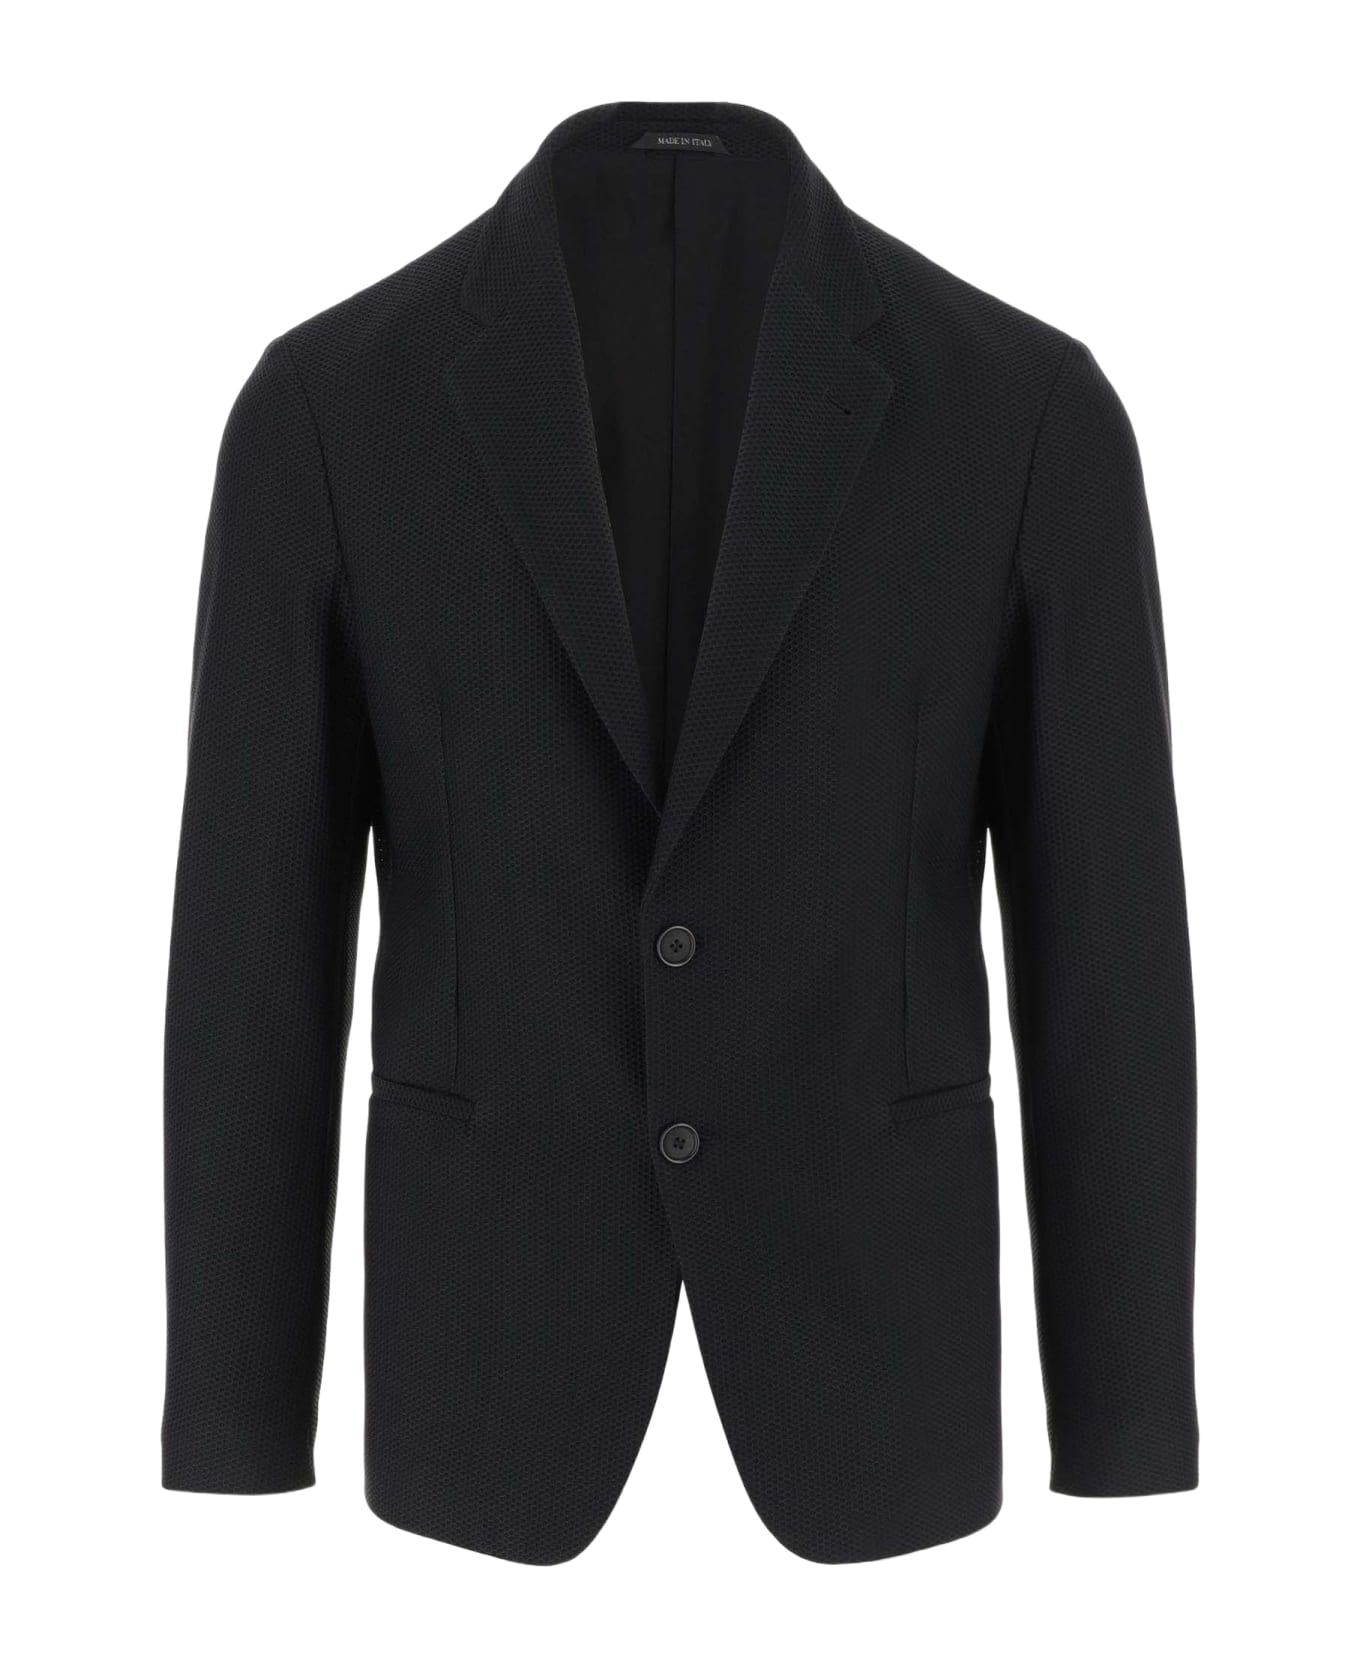 Giorgio Armani Stretch Jersey Jacket - Black